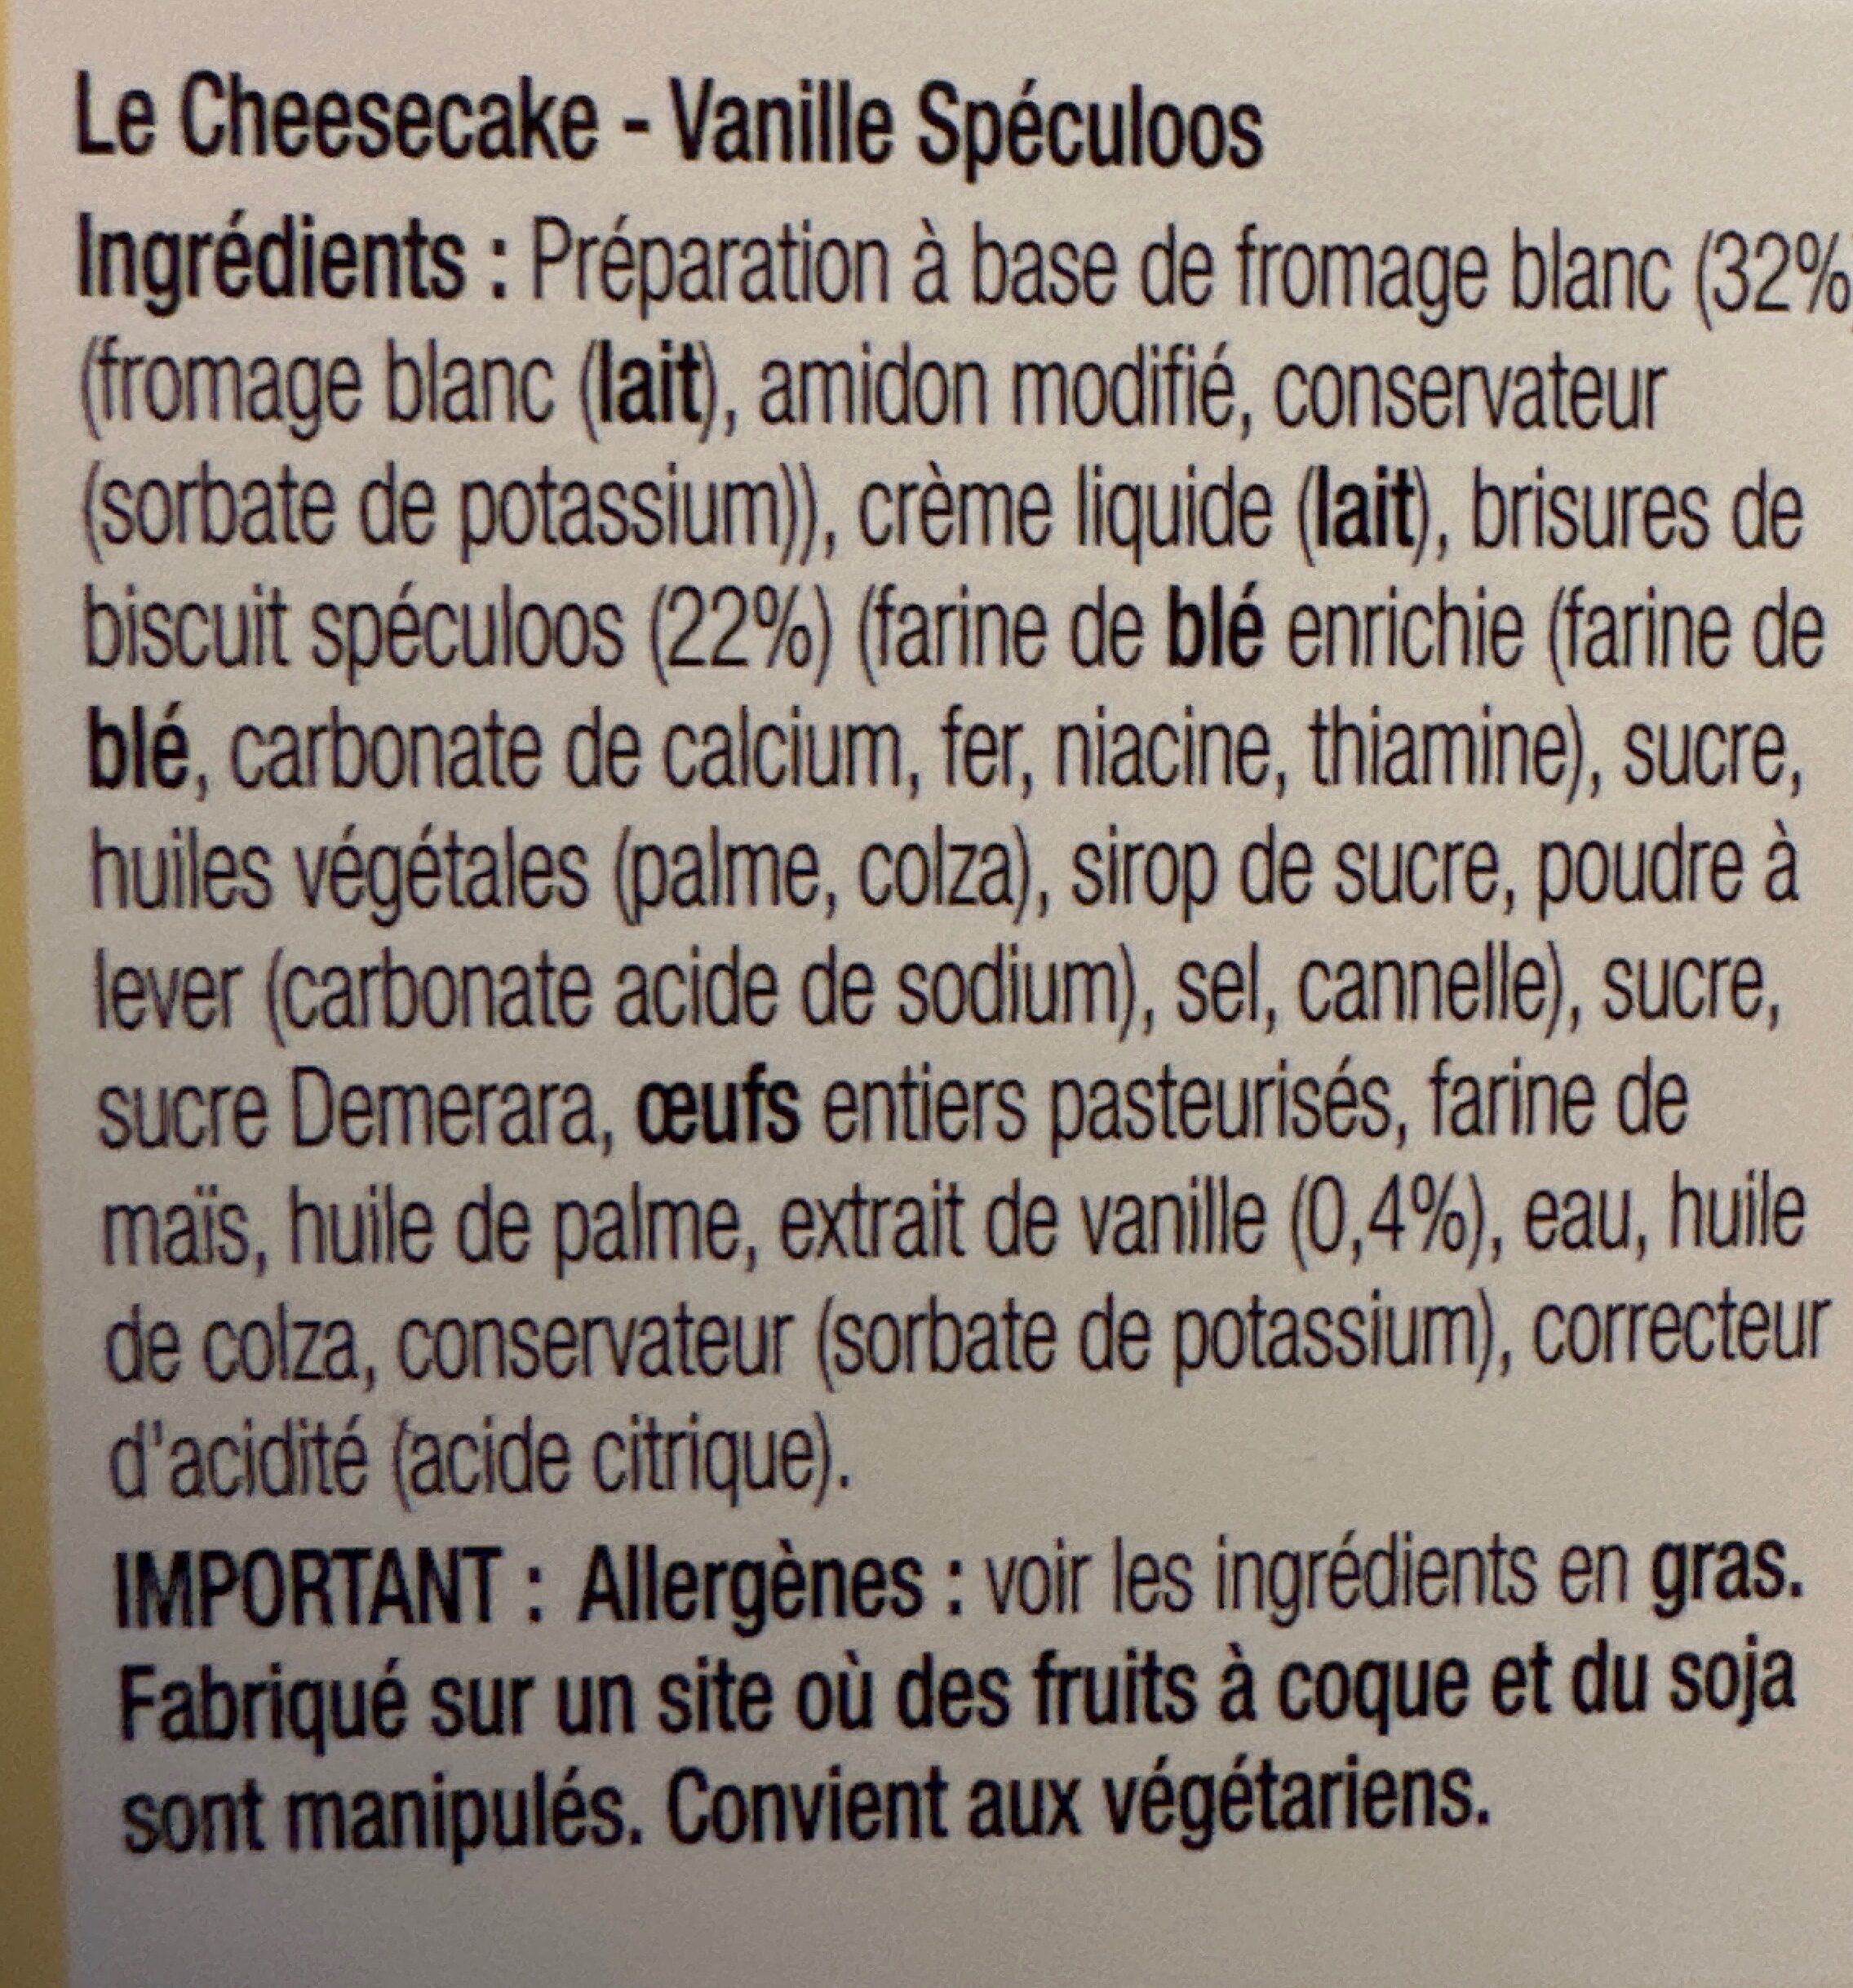 Cheesecake - Vanille speculoos - Zutaten - fr